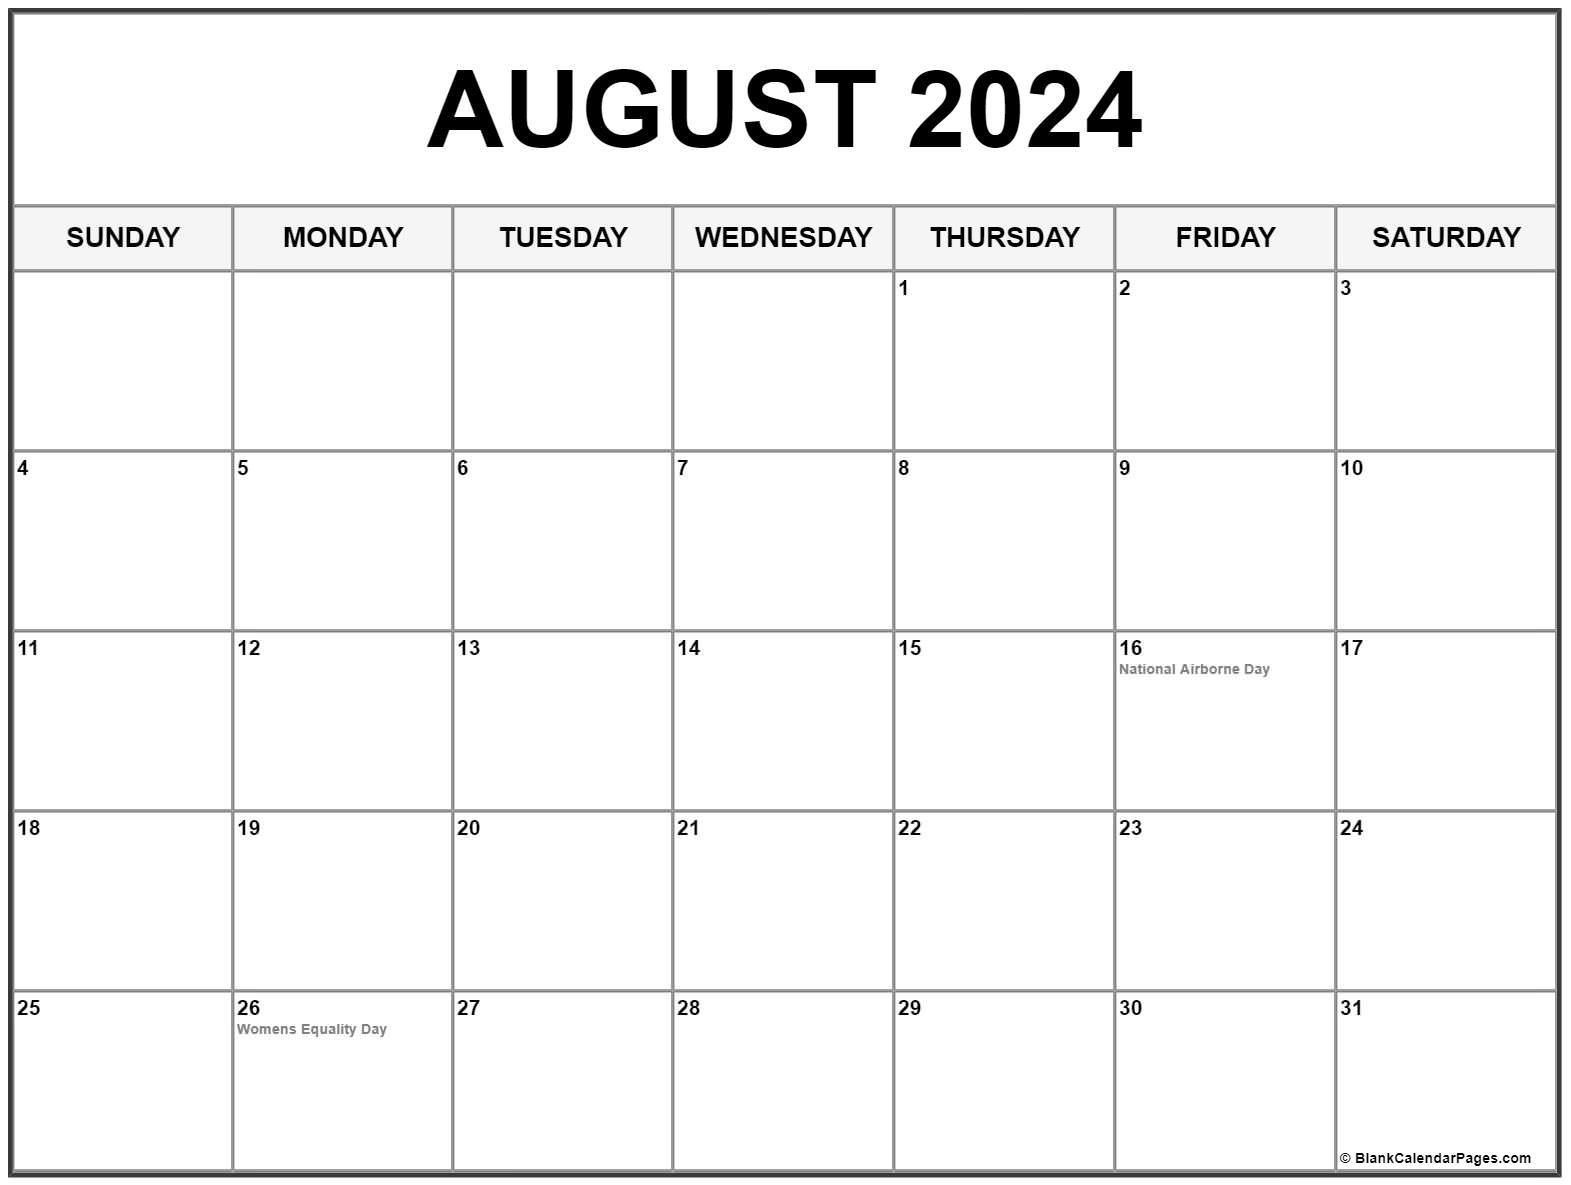 August 2024 Calendar Vector August 2024 August 2024 Calendar Images